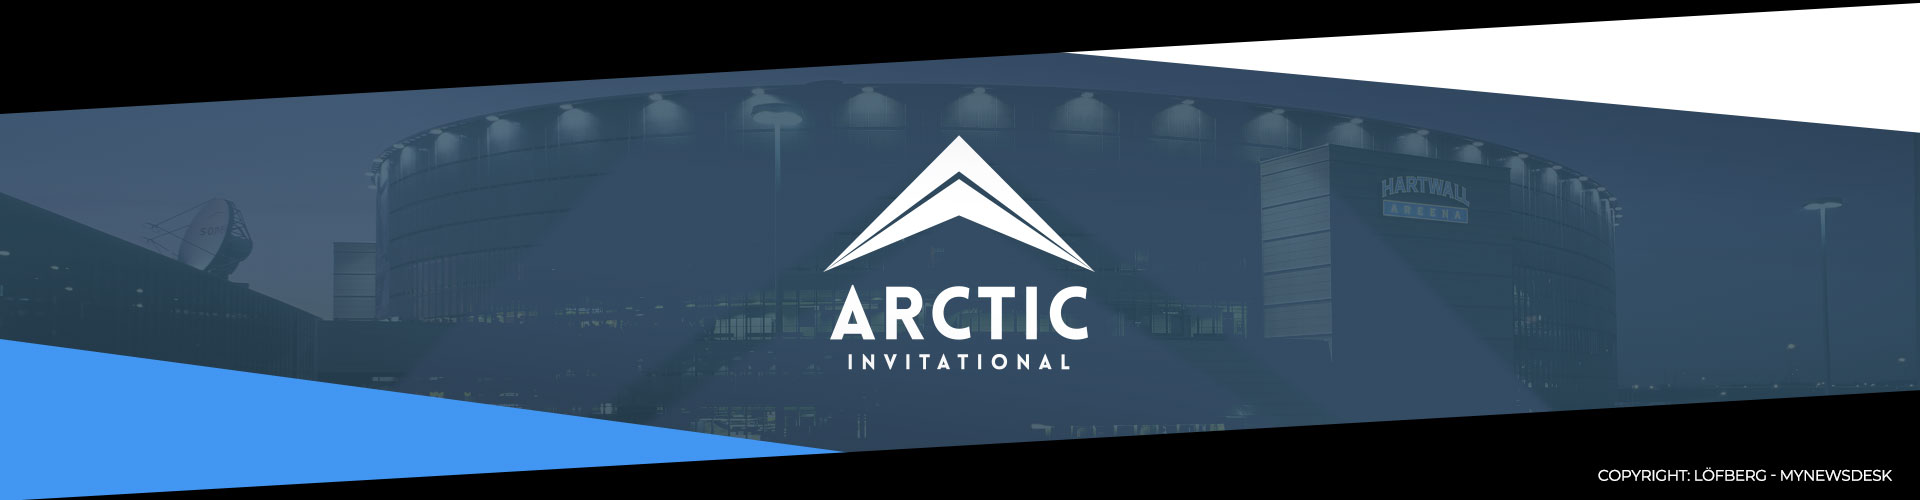 Arctic Invitationali 2019 finaalijoukkueet selvillä